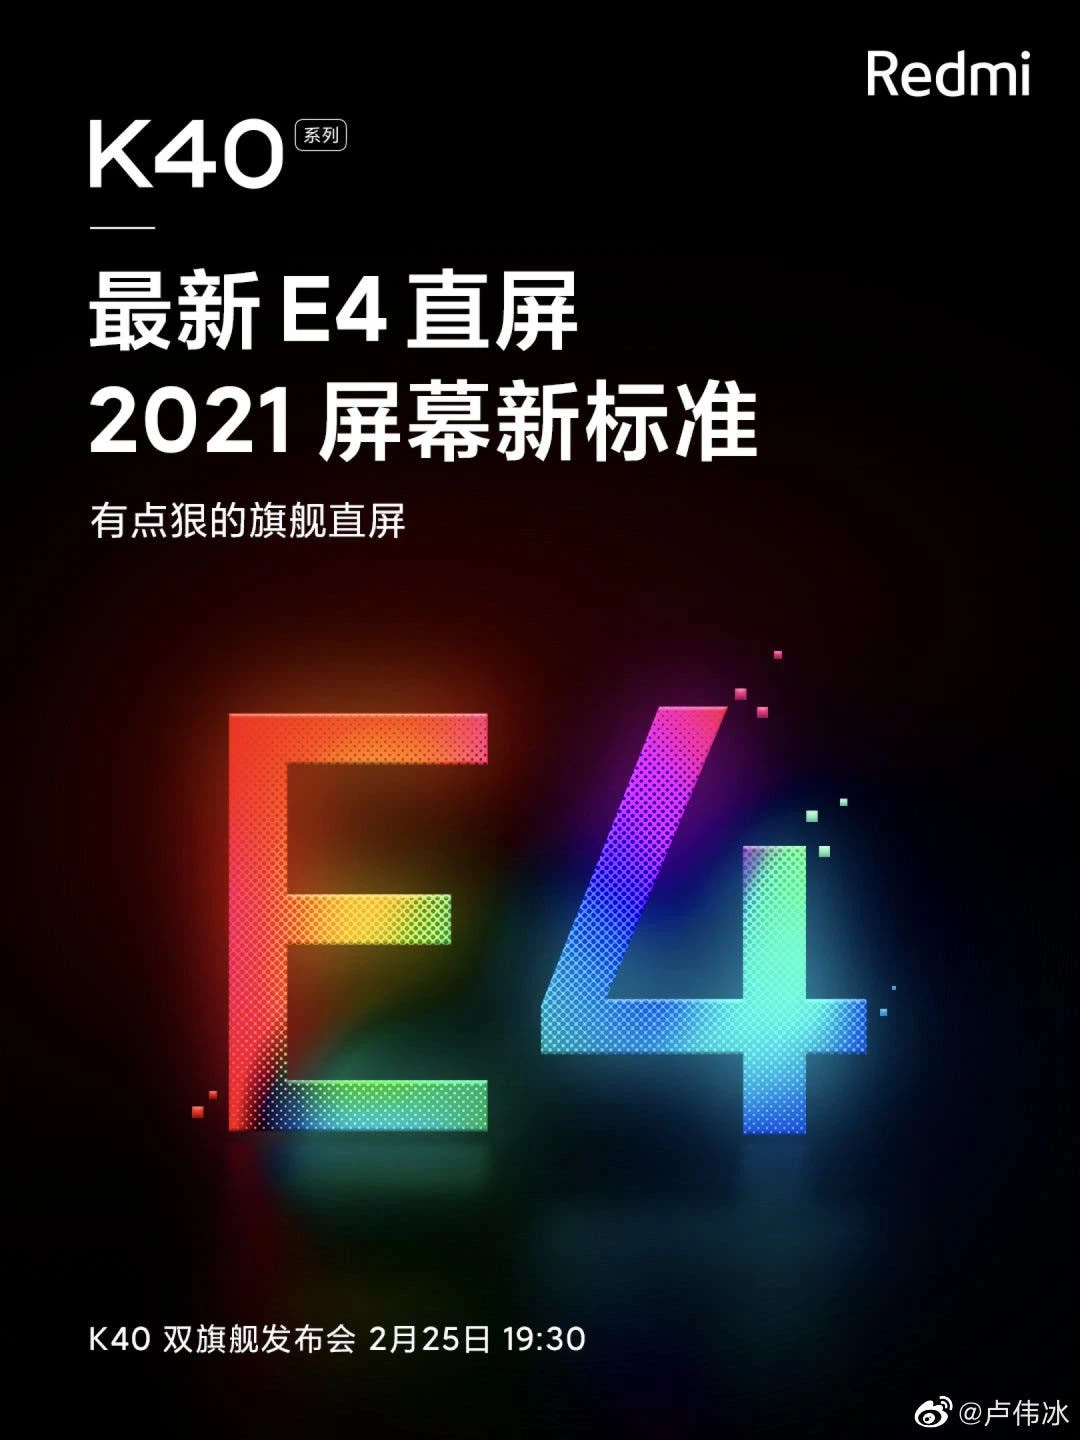 Redmi K40 sẽ sử dụng
công nghệ màn hình OLED như trên Xiaomi Mi 11 và Galaxy S21
Ultra